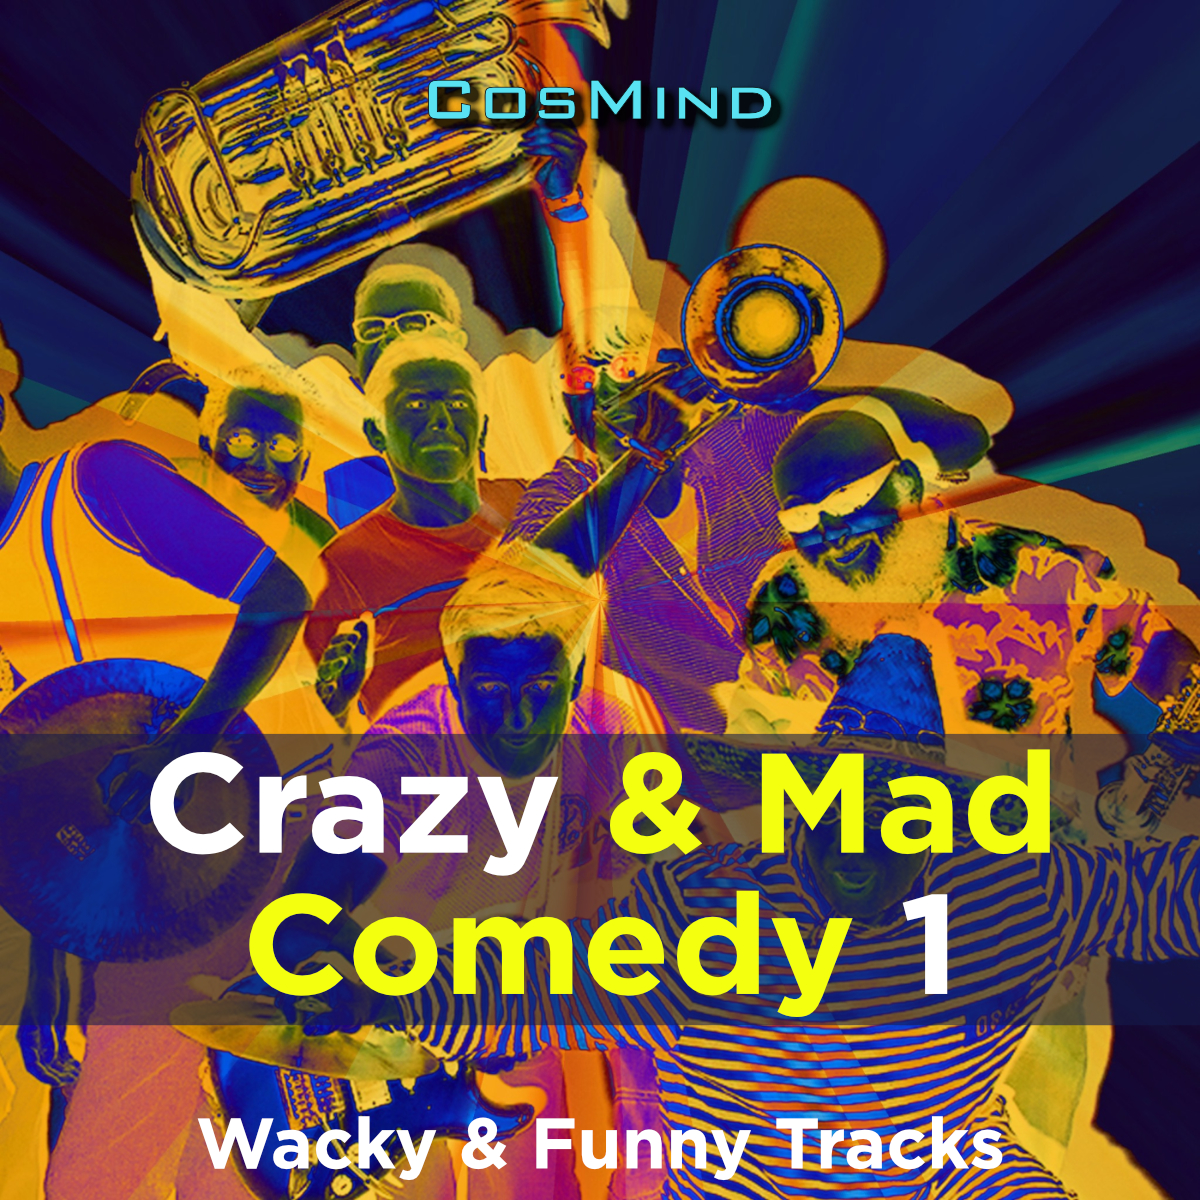 Crazy & Mad Comedy 1